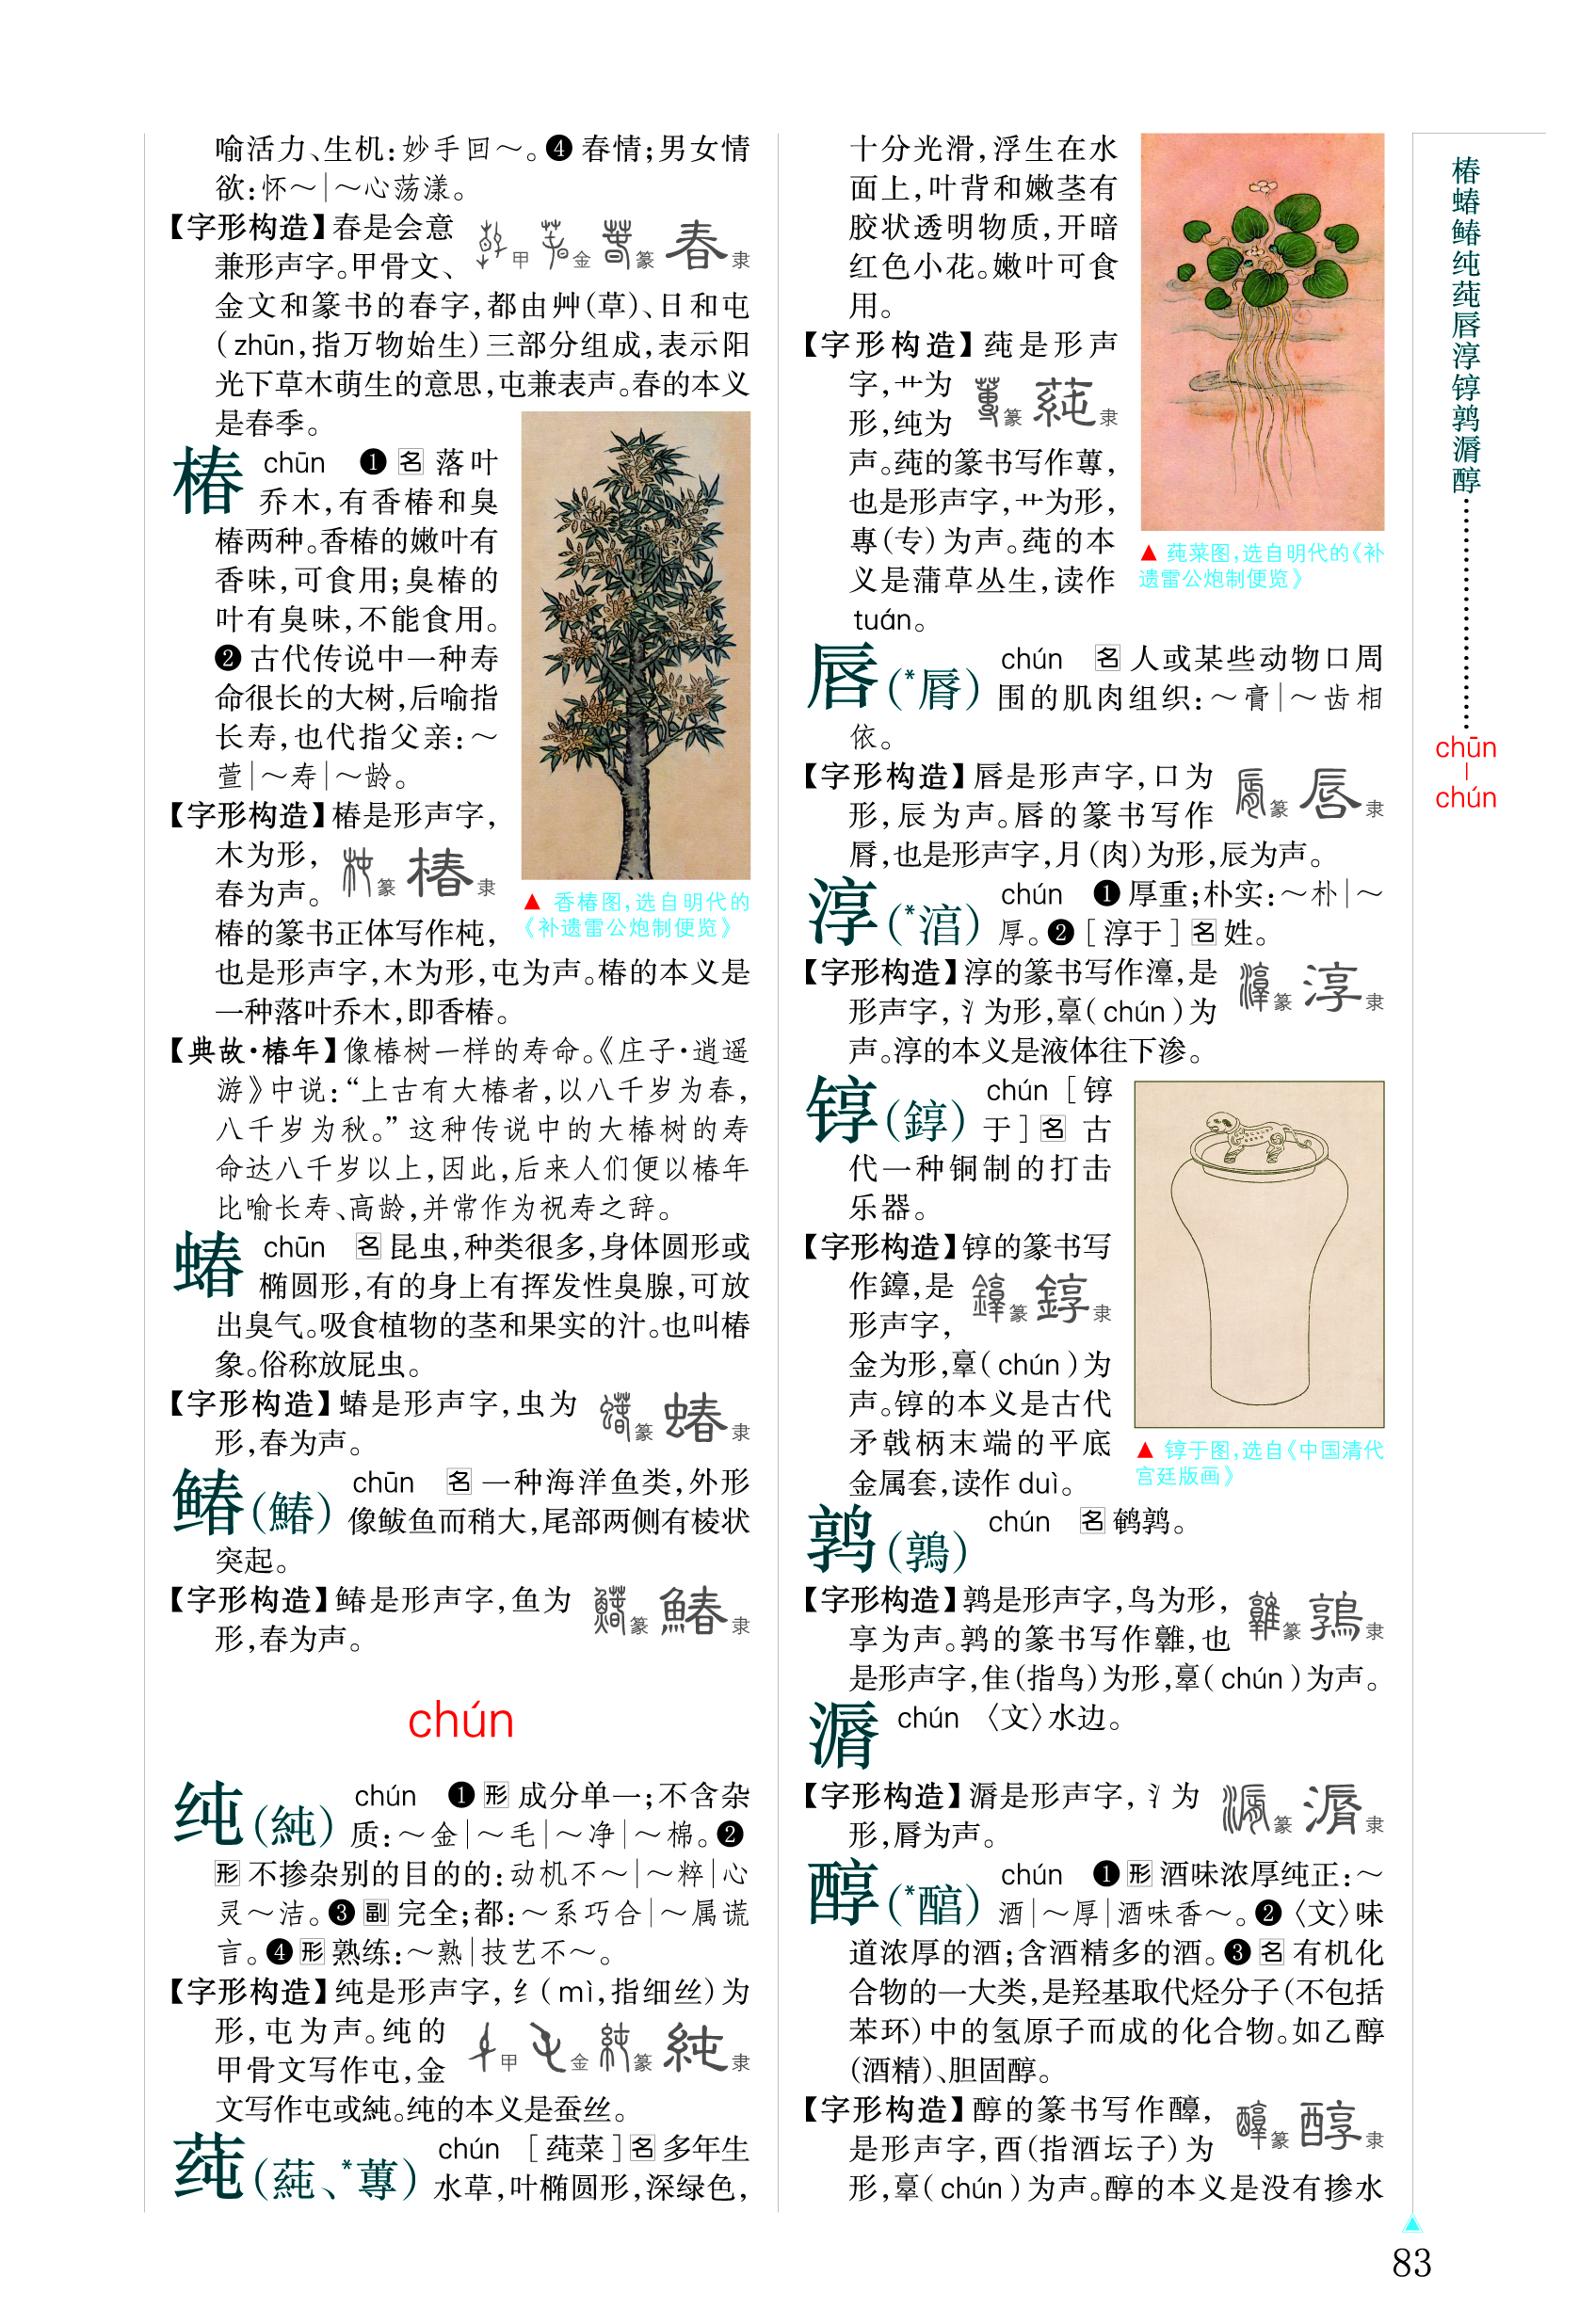 《中華大字典》內容頁